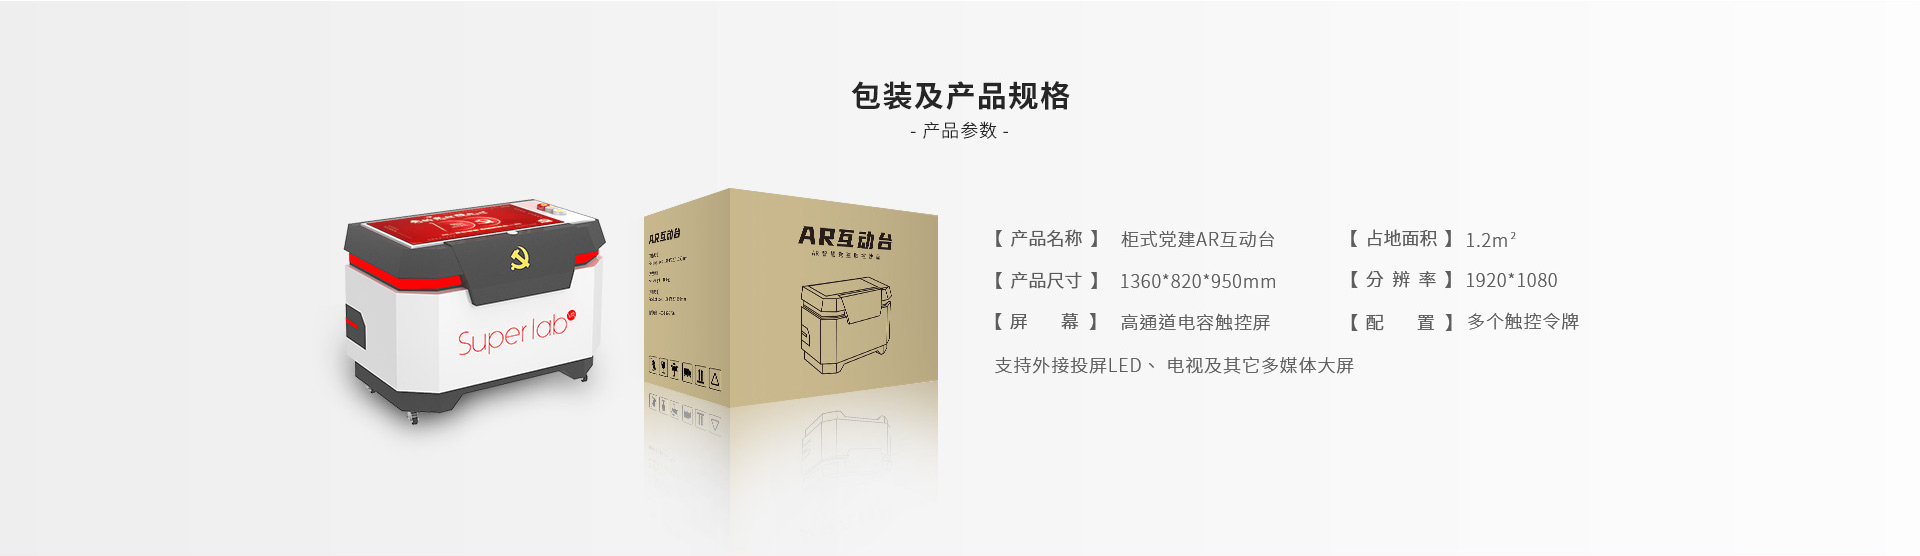 AR互动台包装及产品规格